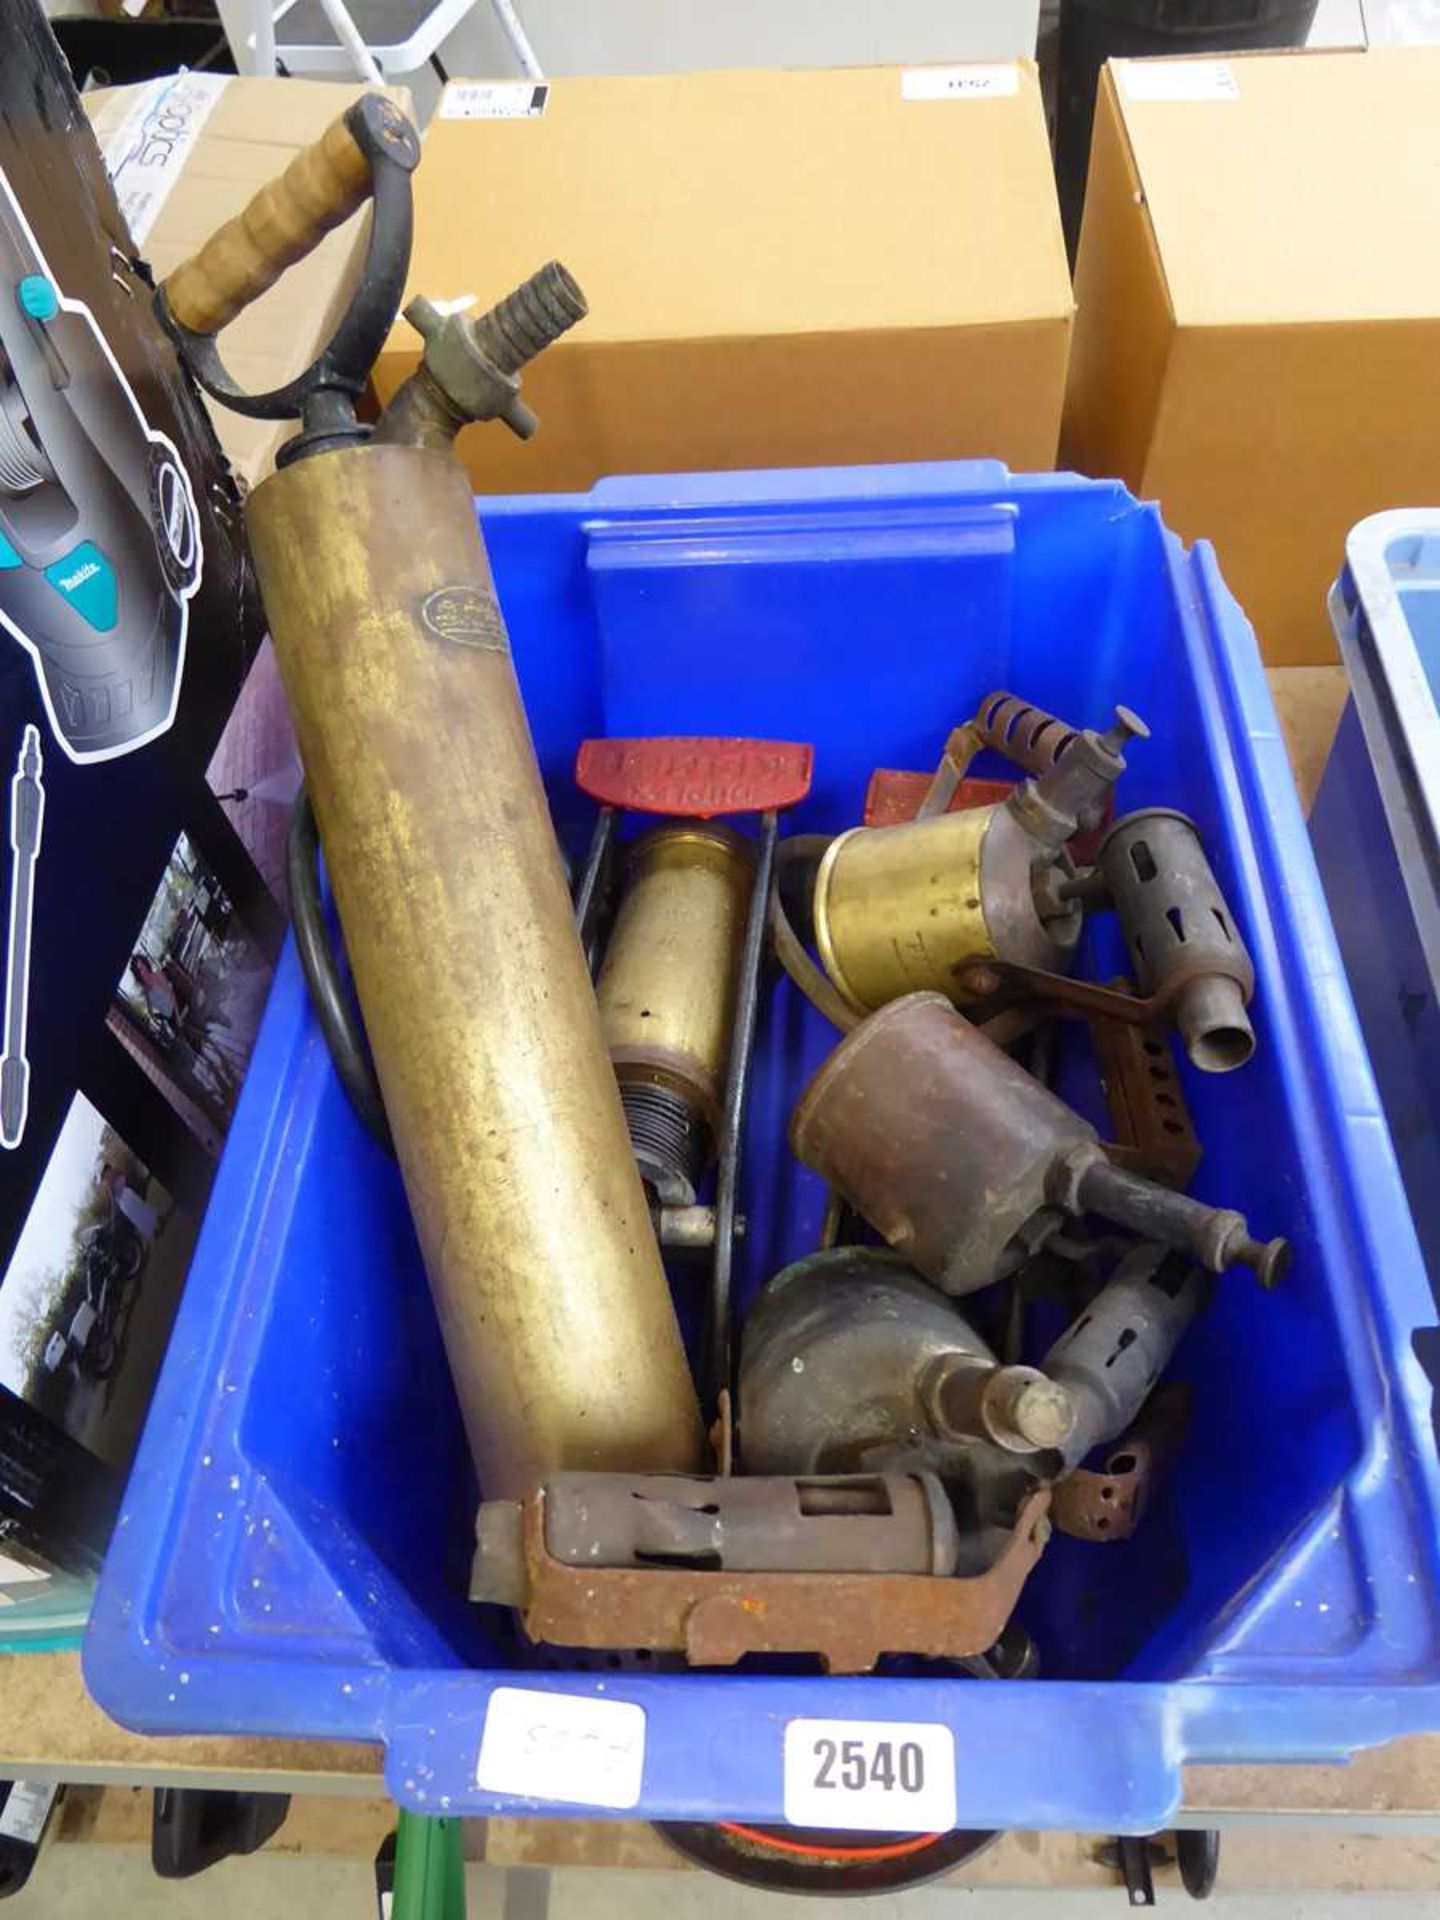 Crate of vintage paraffin flame guns, 2 vintage single barrel foot pumps and vintage hand pump